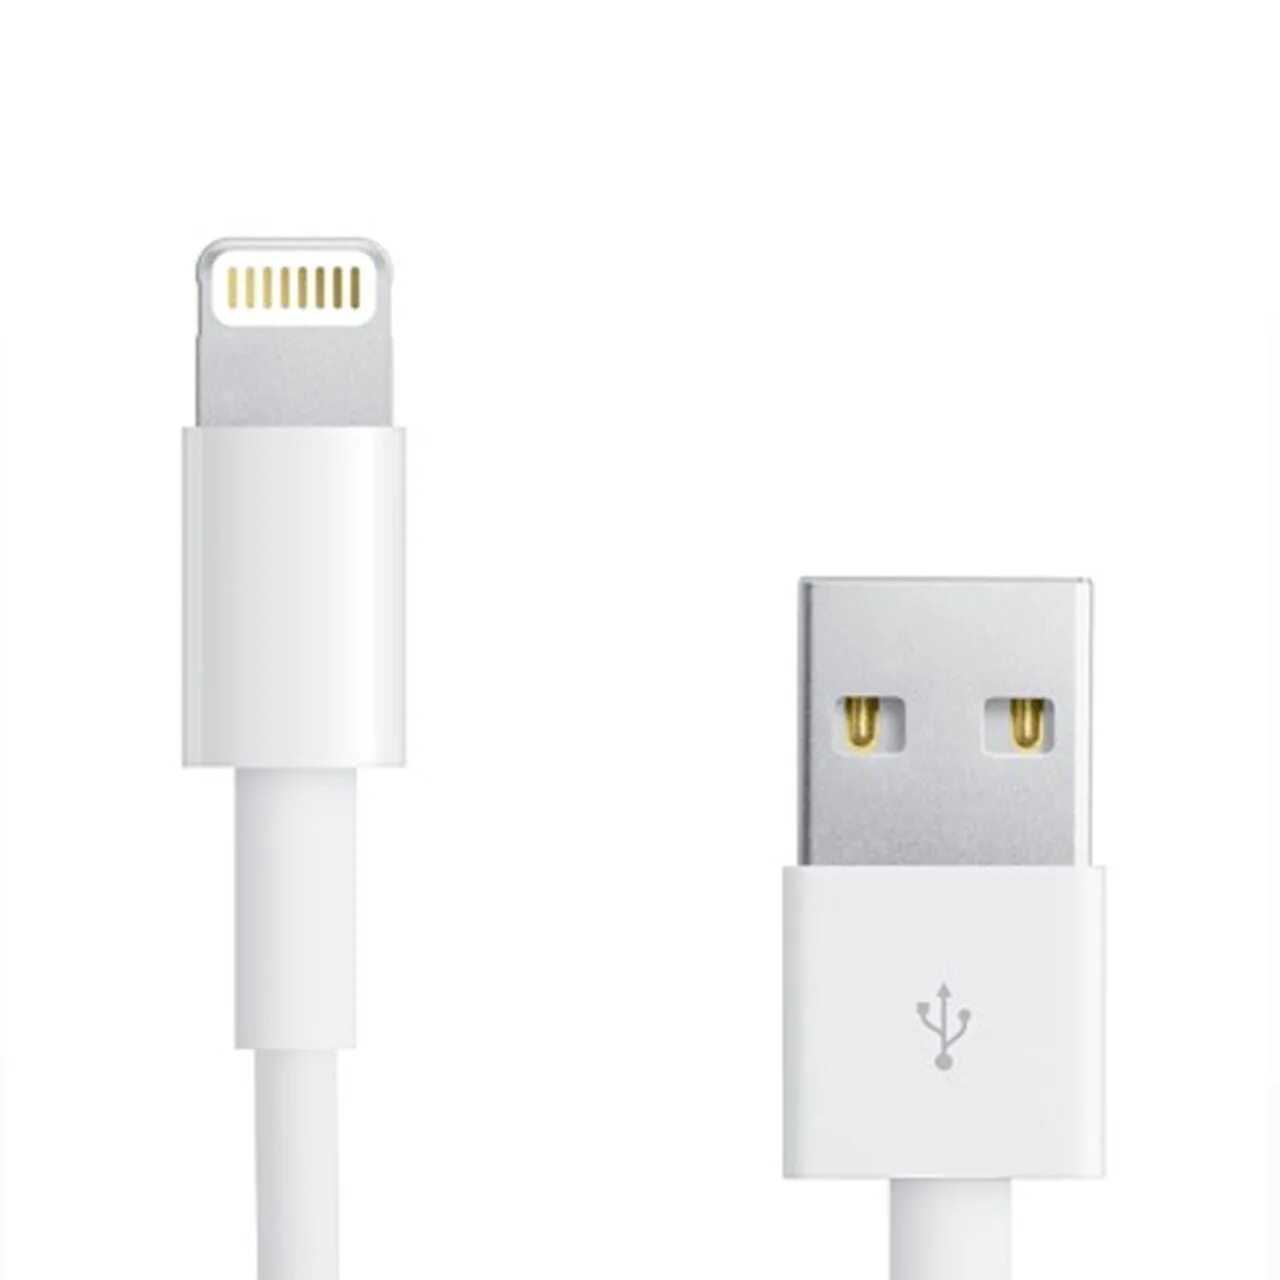 Usb lightning оригинал. Кабель Lightning Apple USB-C to Lightning Cable 1m. Кабель Apple USB - Lightning (md818zm/a) 1 м. Кабель Apple USB-Lightning, 2м, белый (md819zm/a). Apple USB-C to Lightning Cable (1 m).